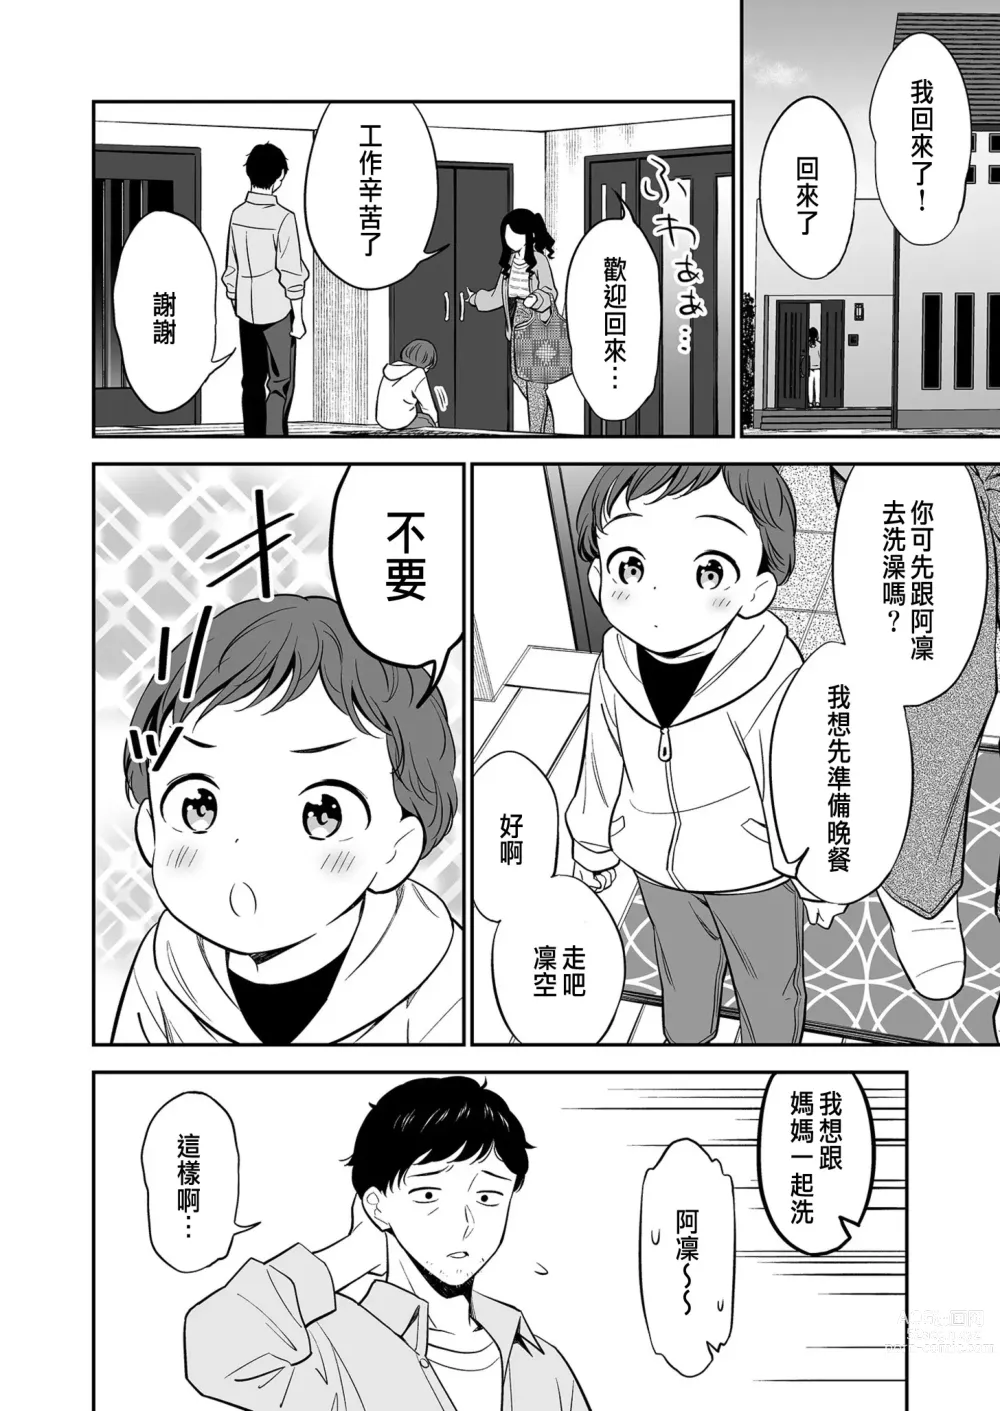 Page 6 of manga Suki nano wa Anata dake... 1